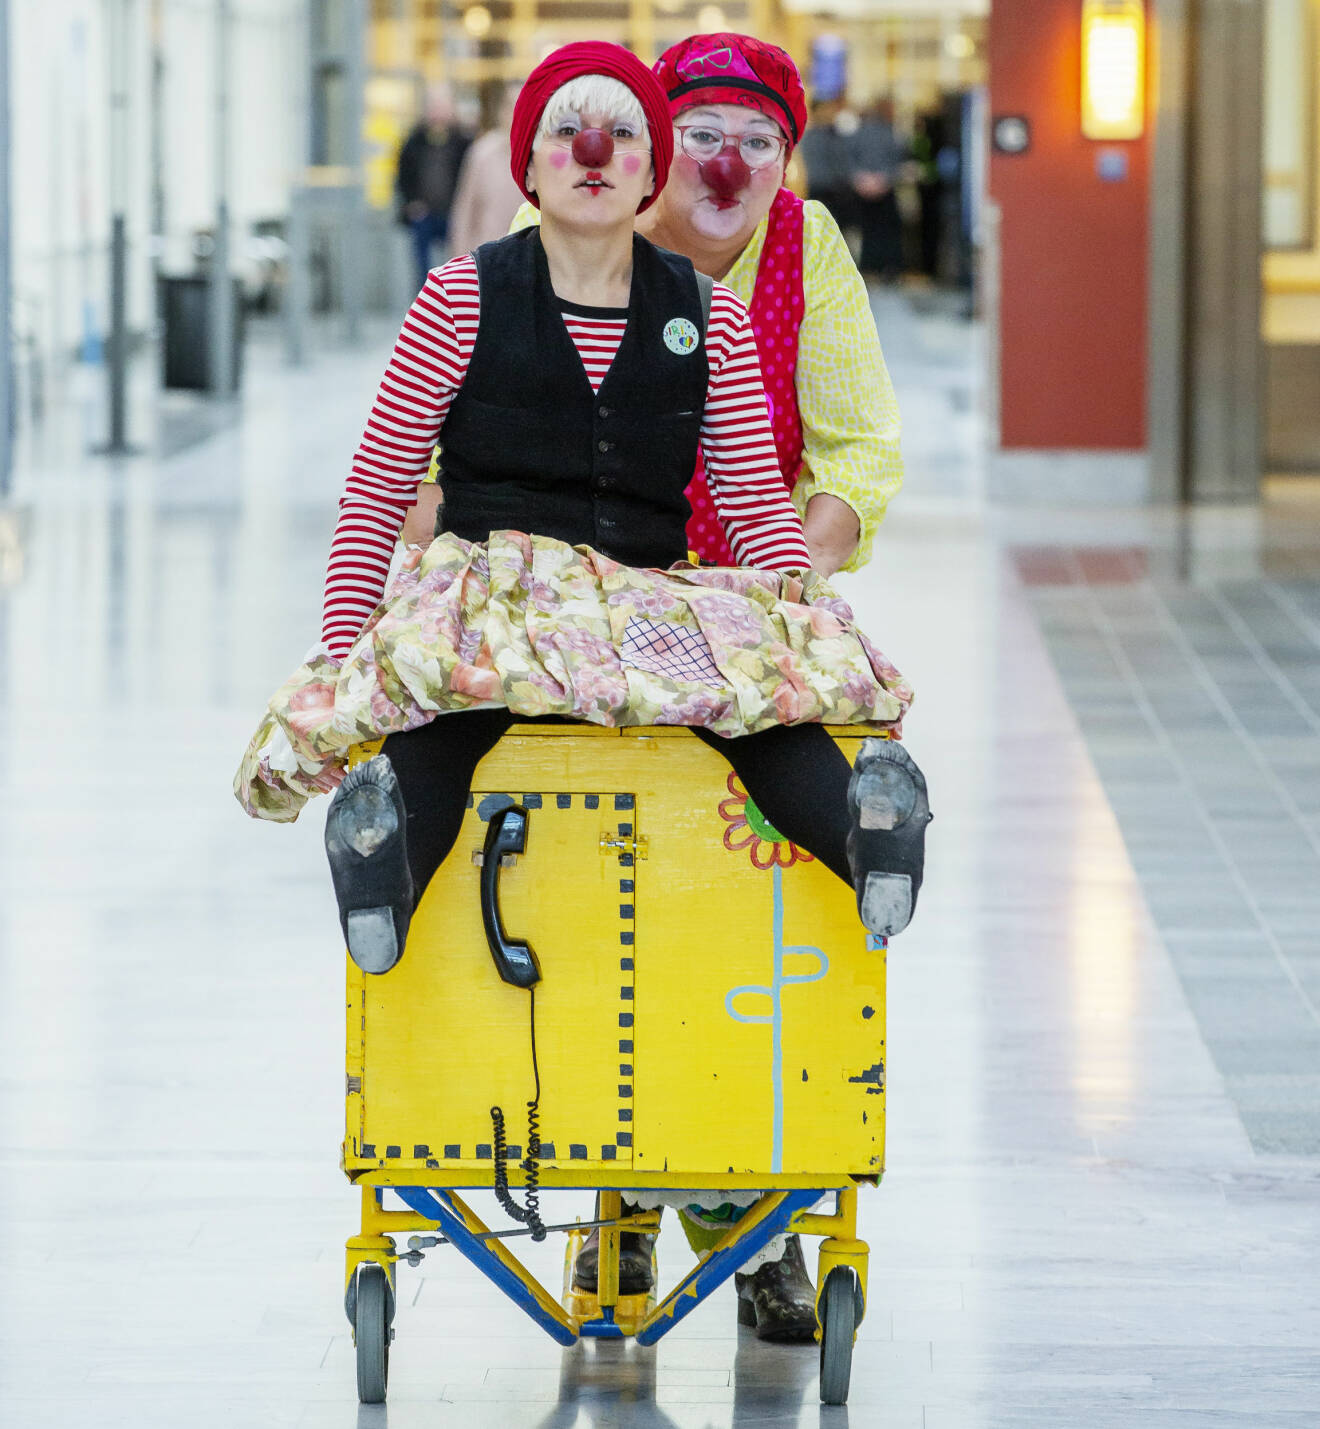 Clownerna Sally och Siri gör sig redo för en rond på sjukhuset.